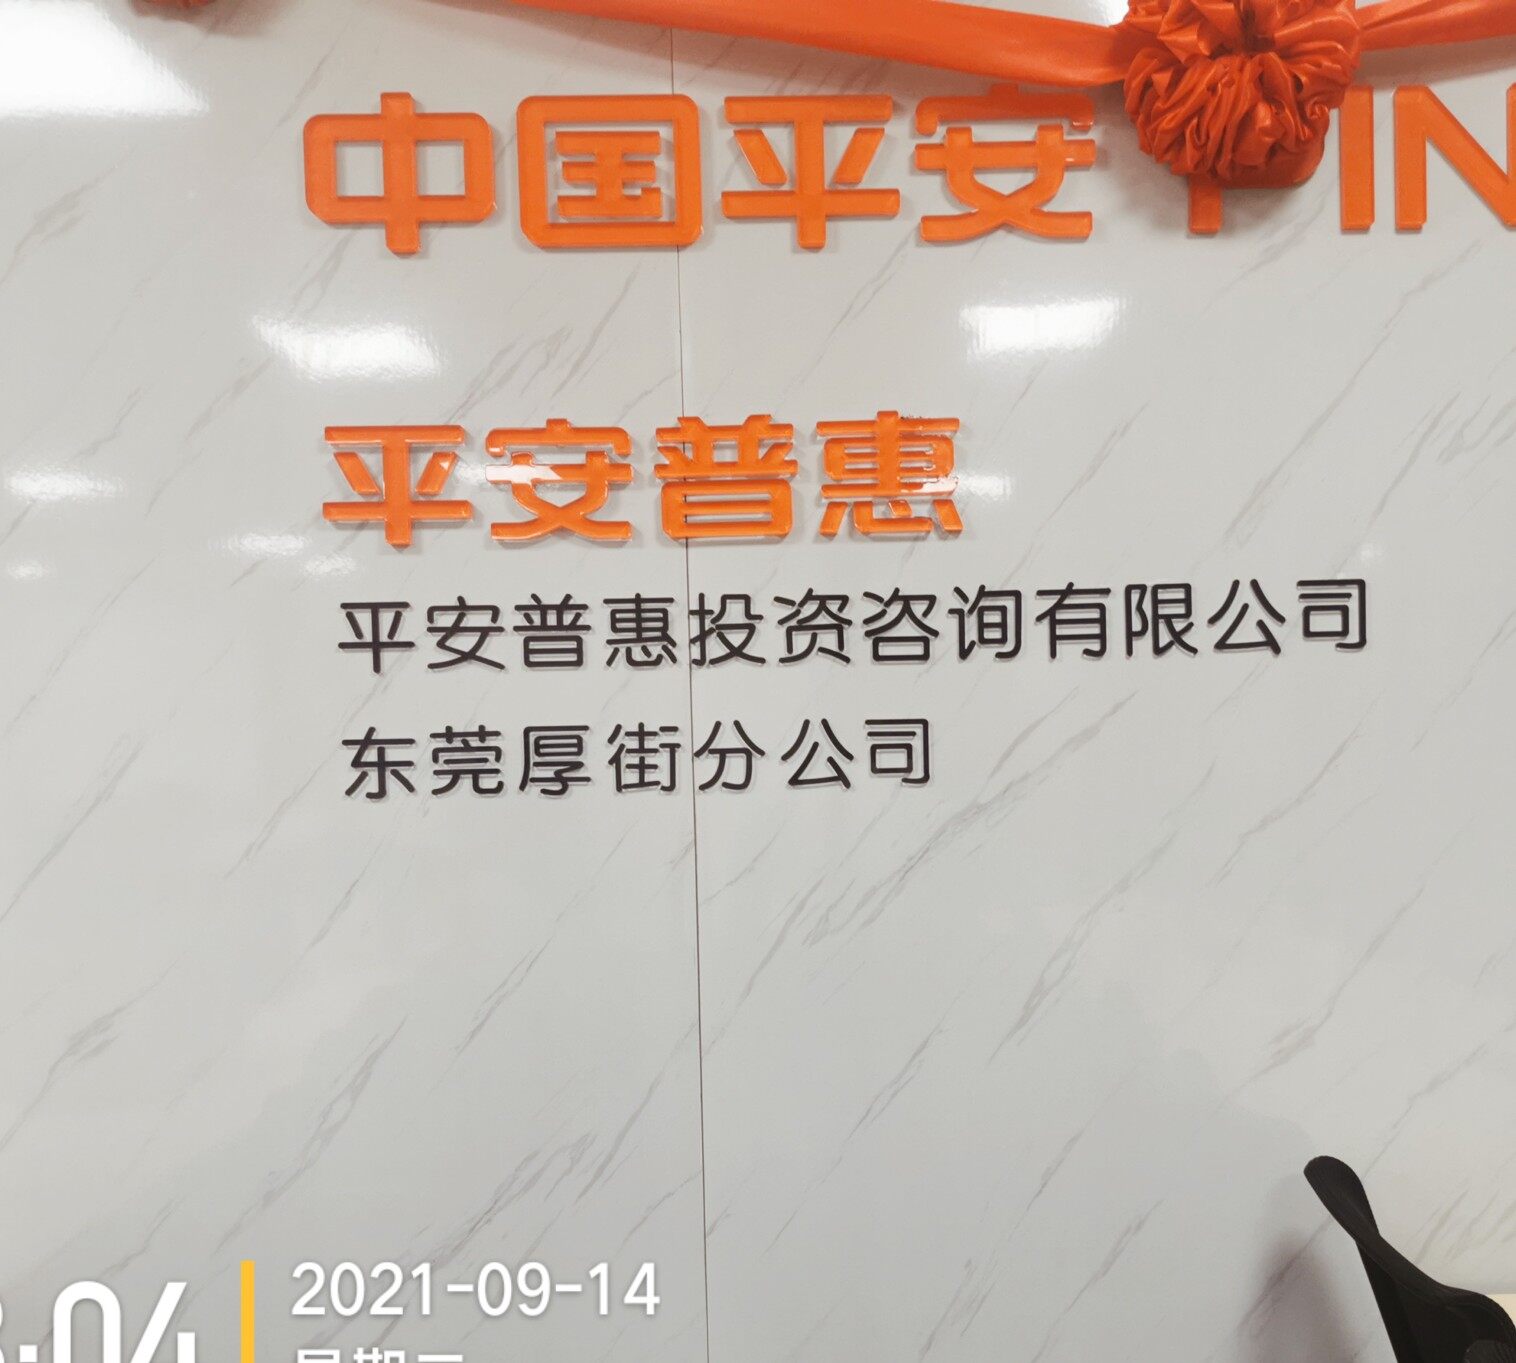 平安普惠东莞厚街分公司logo